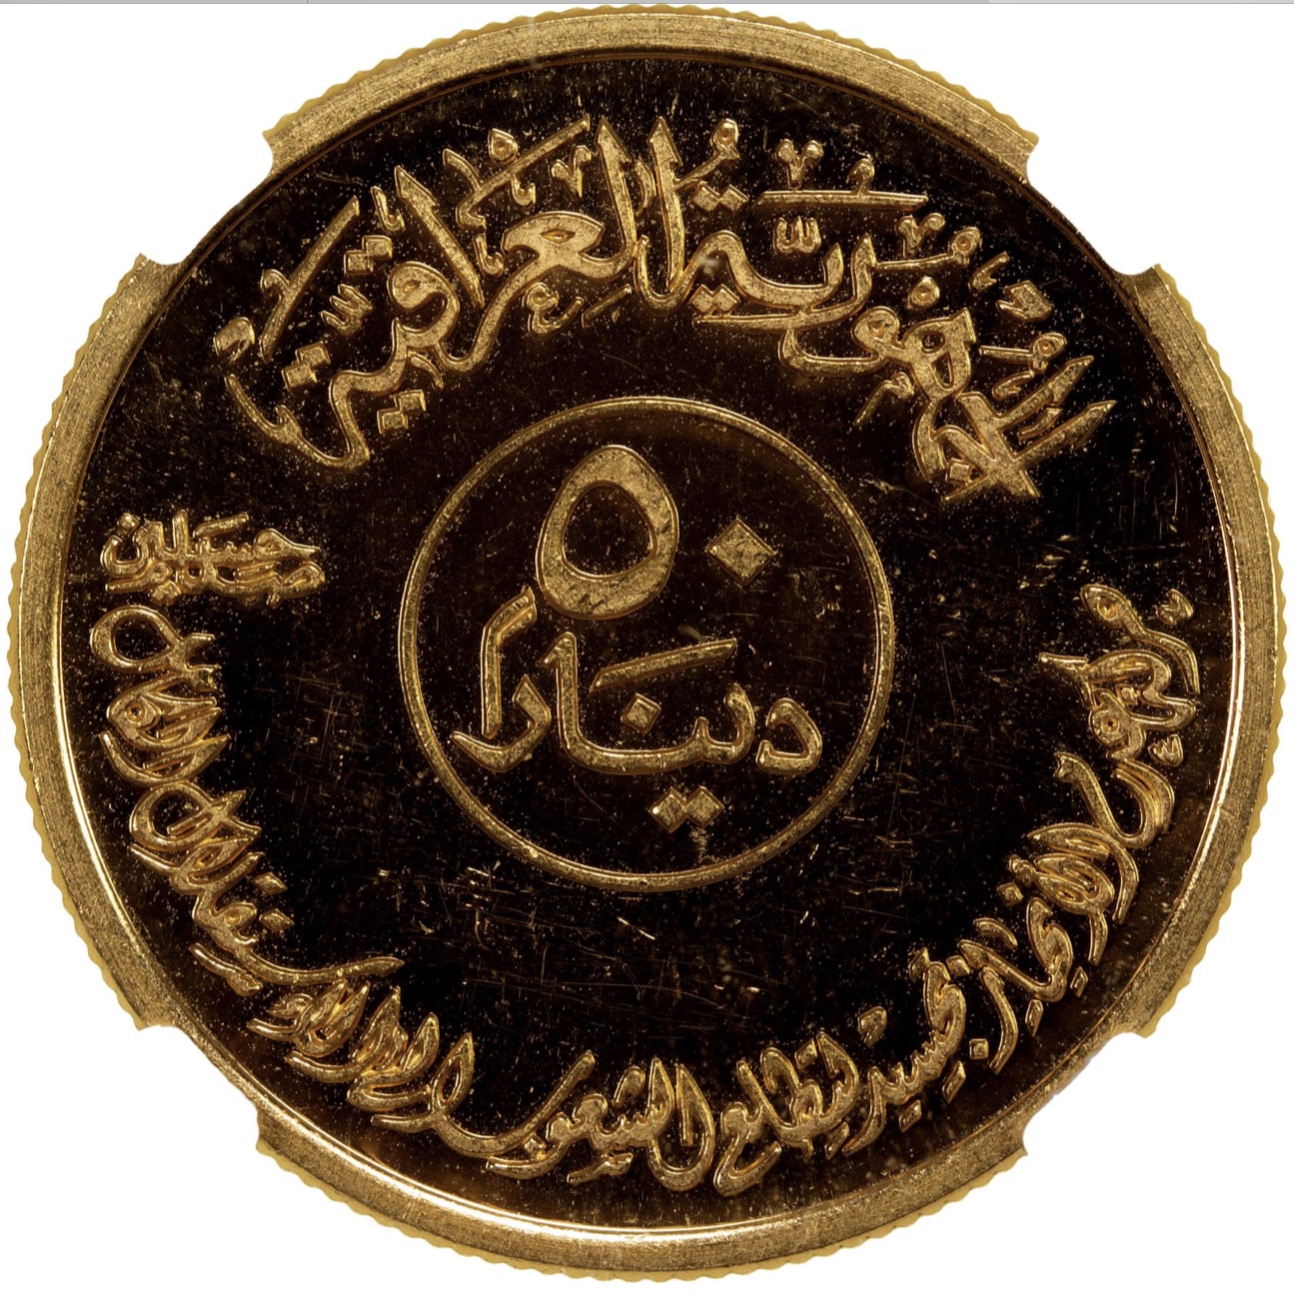 1400 AH 1981 Iraq 50 Dinars Gold Coin KM 150 NGC Proof 64 Ultra Cameo Saddam Era